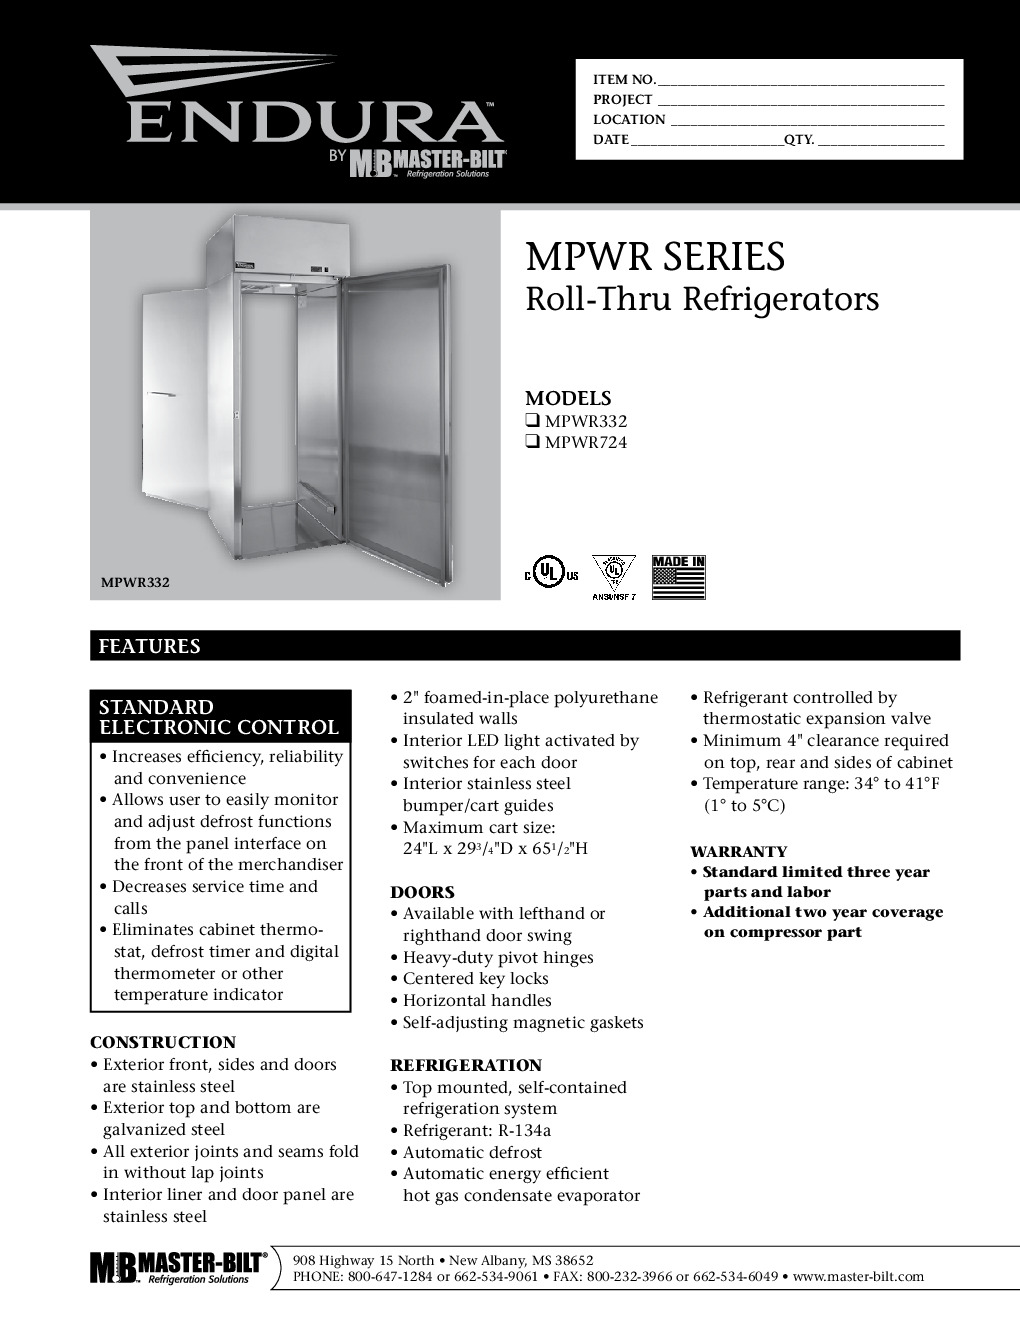 Master-Bilt MPWR332SSS/0 Roll-Thru Refrigerator